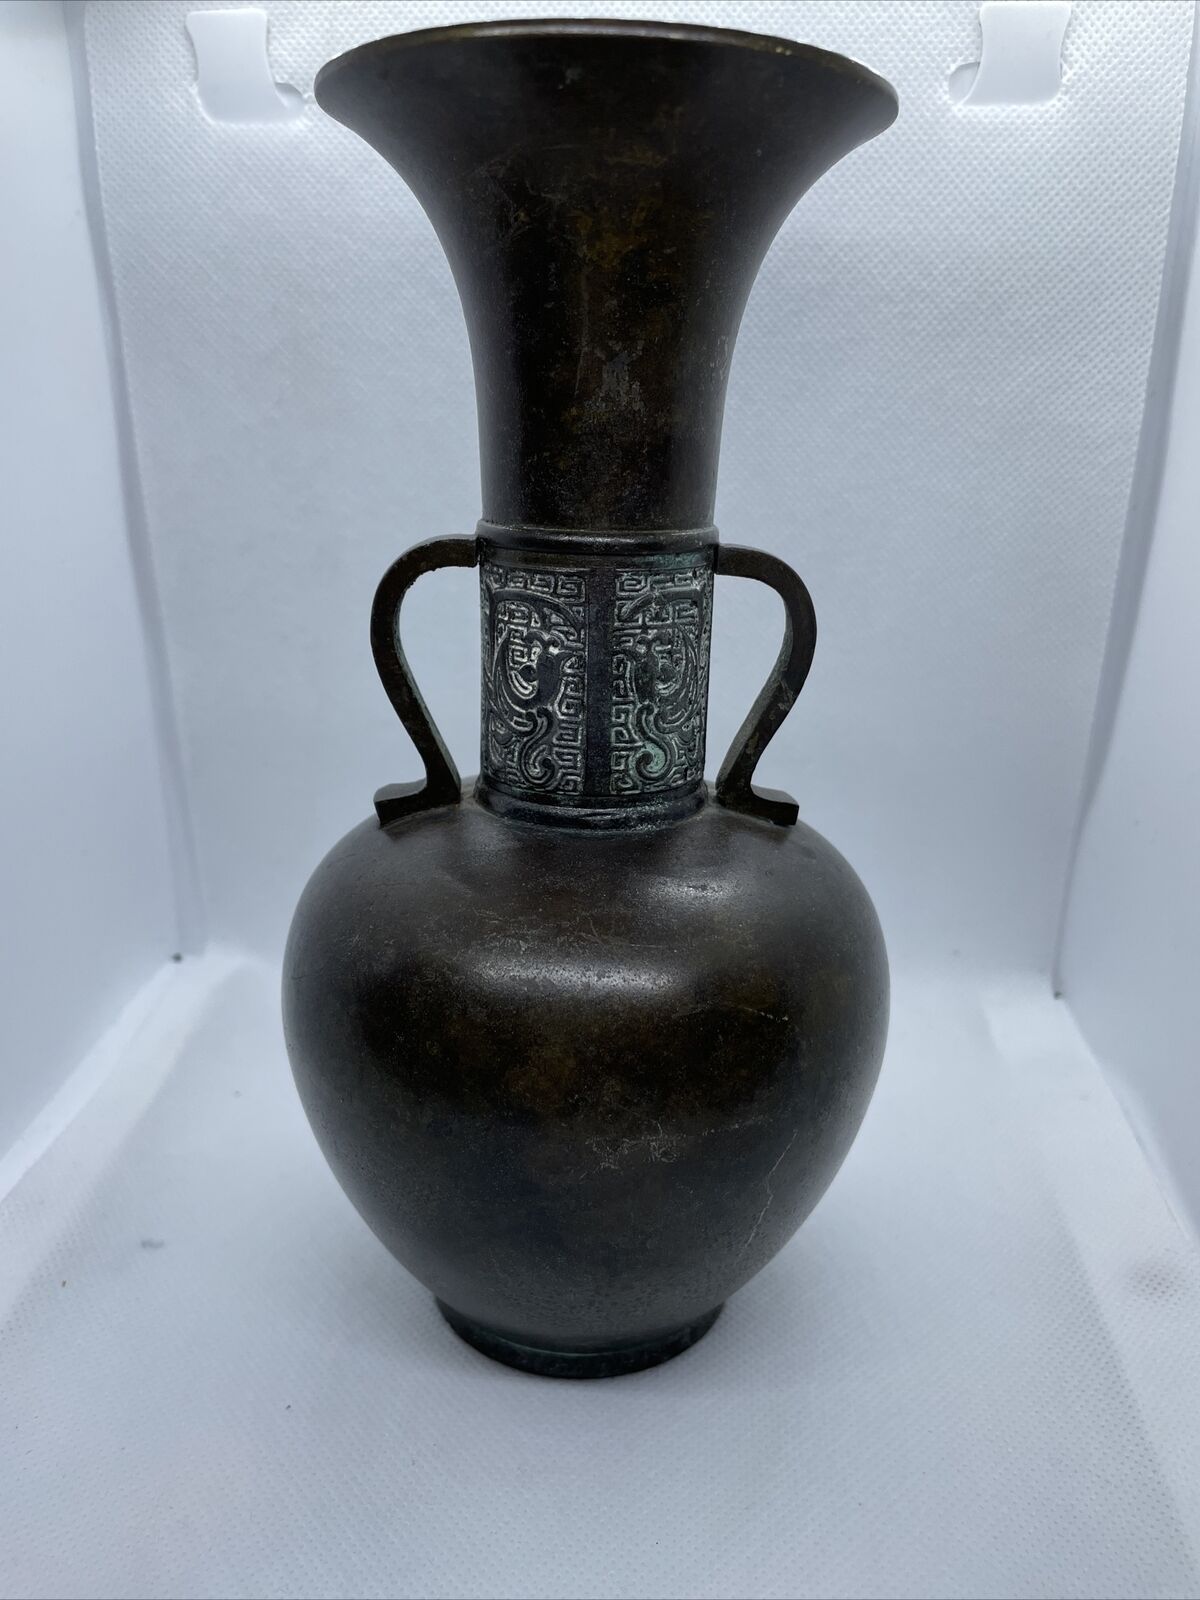 Antique Valuations: Antique Vintage Japanese Patinated Bronze Verdigris Vase Vessel